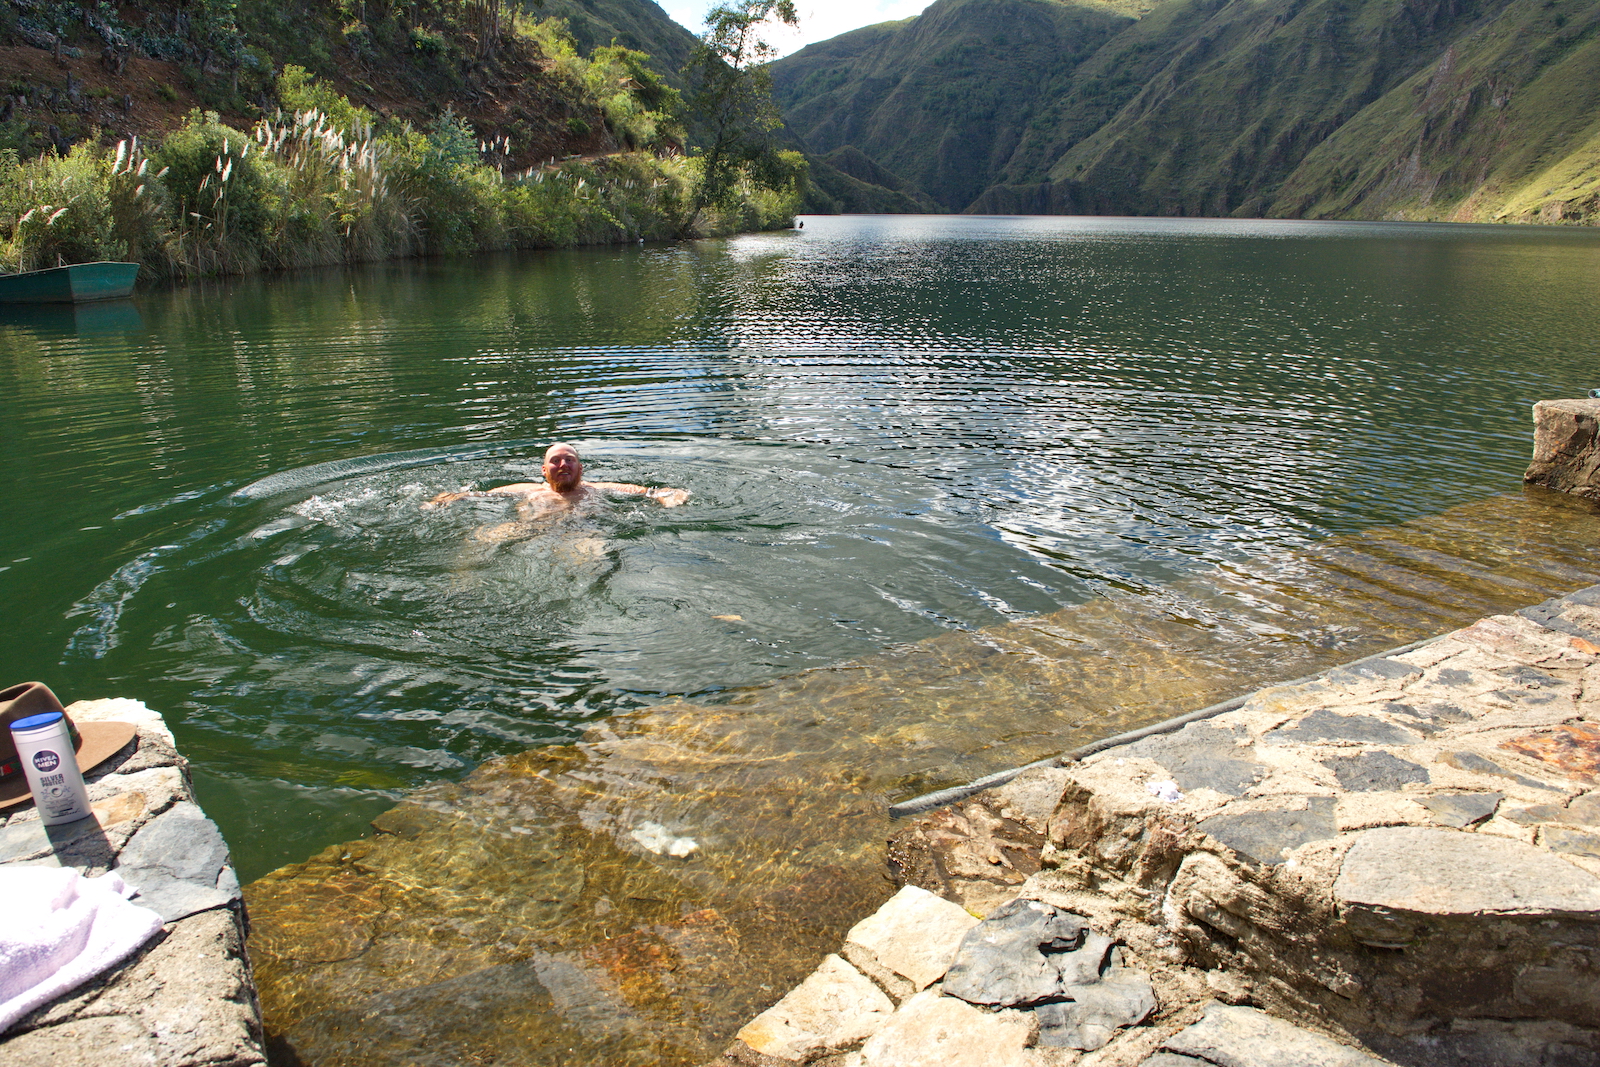 Baden in der Laguna Purhuay, 3700m, Wassertemperatur +7 Grad – man muss sich ja auch mal baden, Interview Christian Weinberger